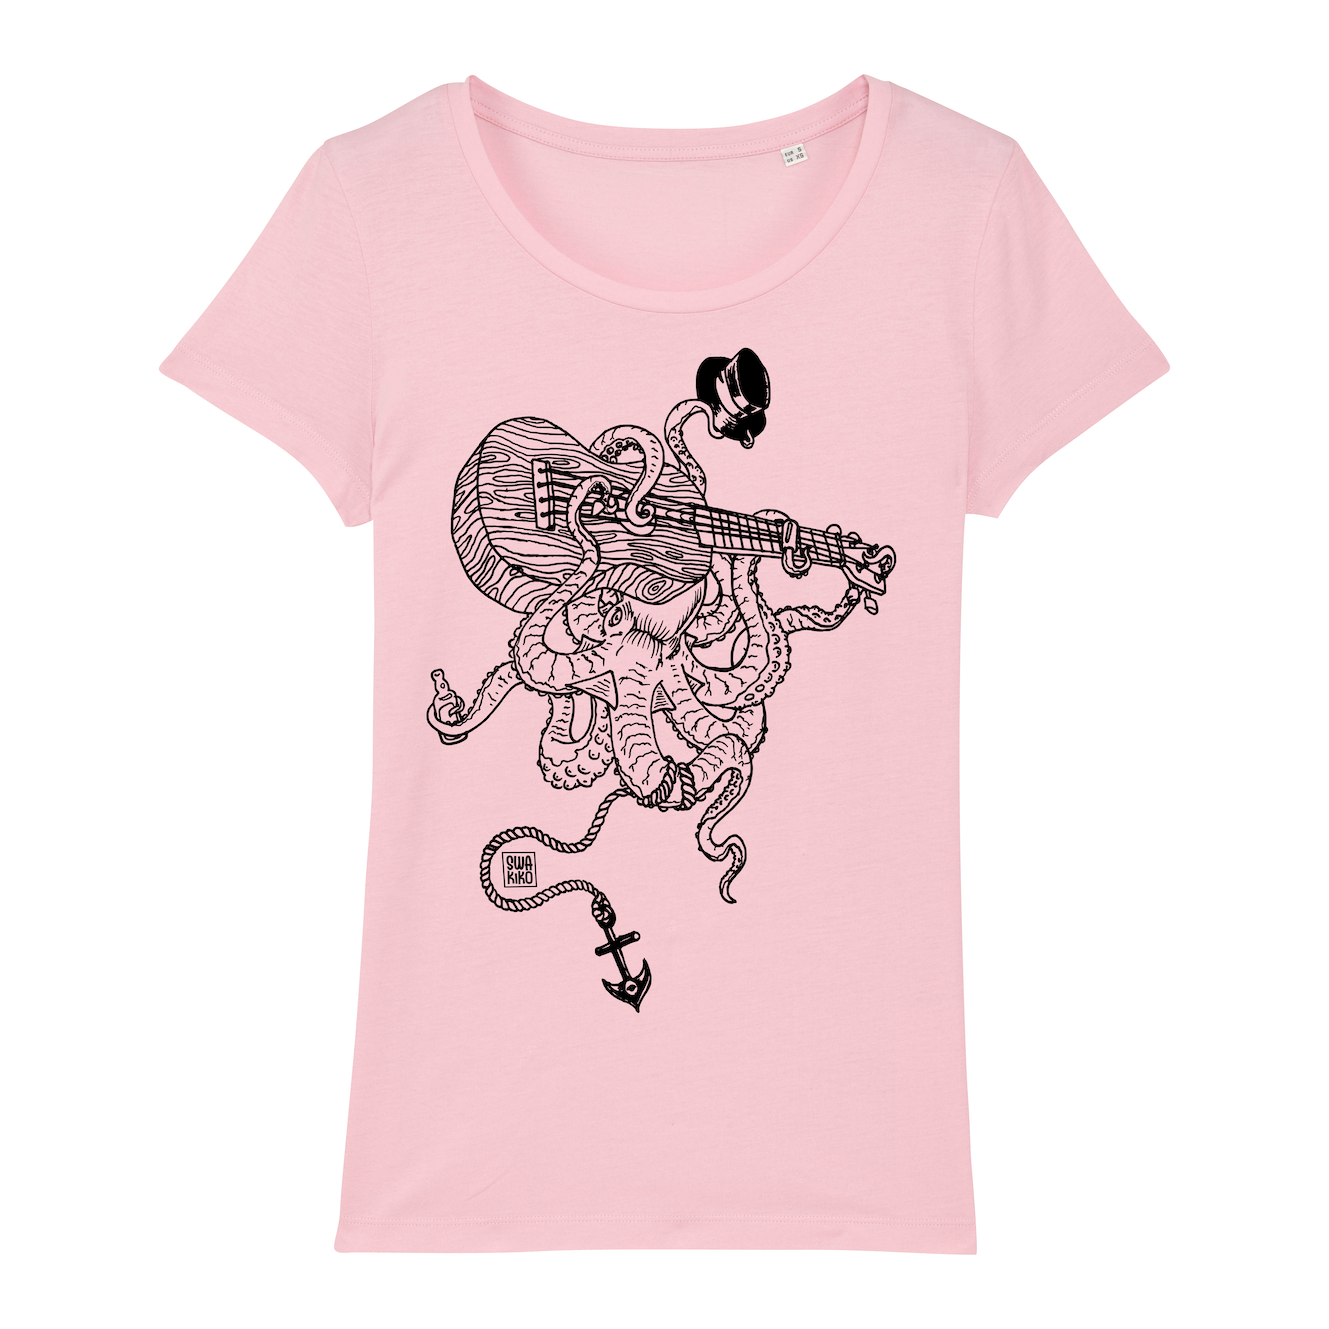 Surf t-shirt women pink, kahuna